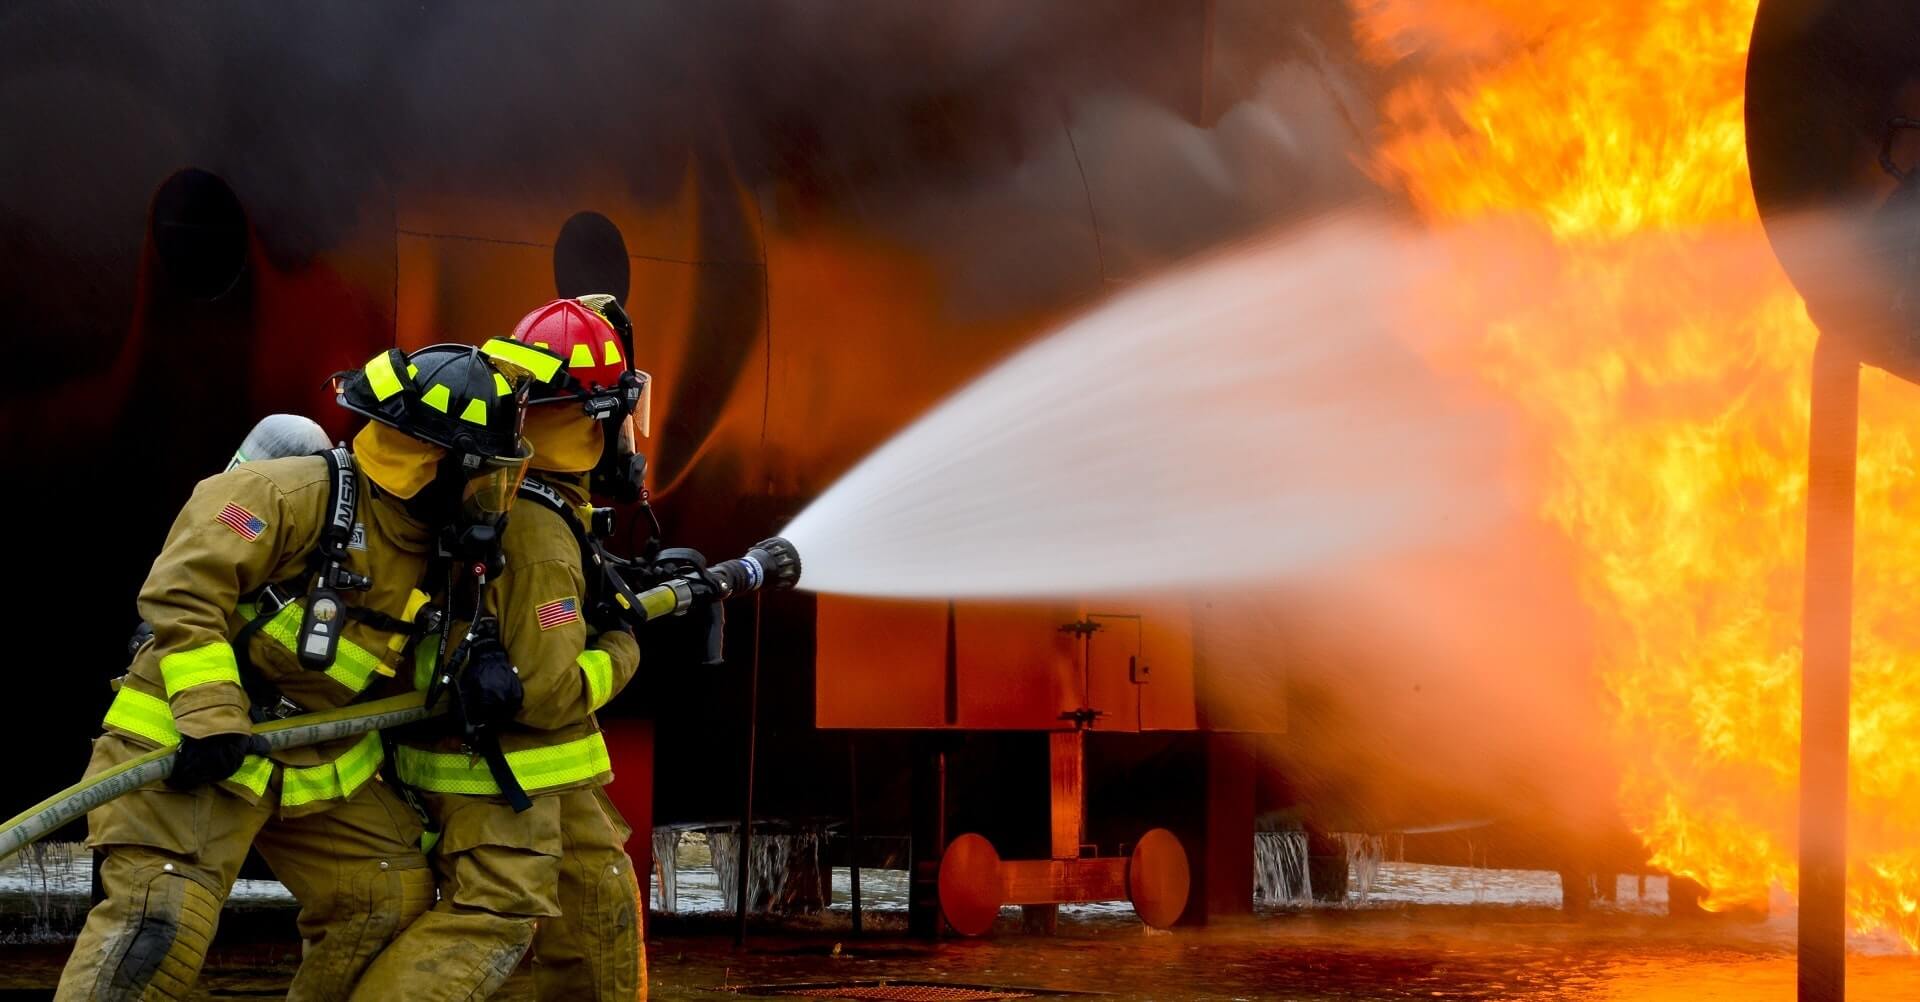 Fire Safety Audit Checklist